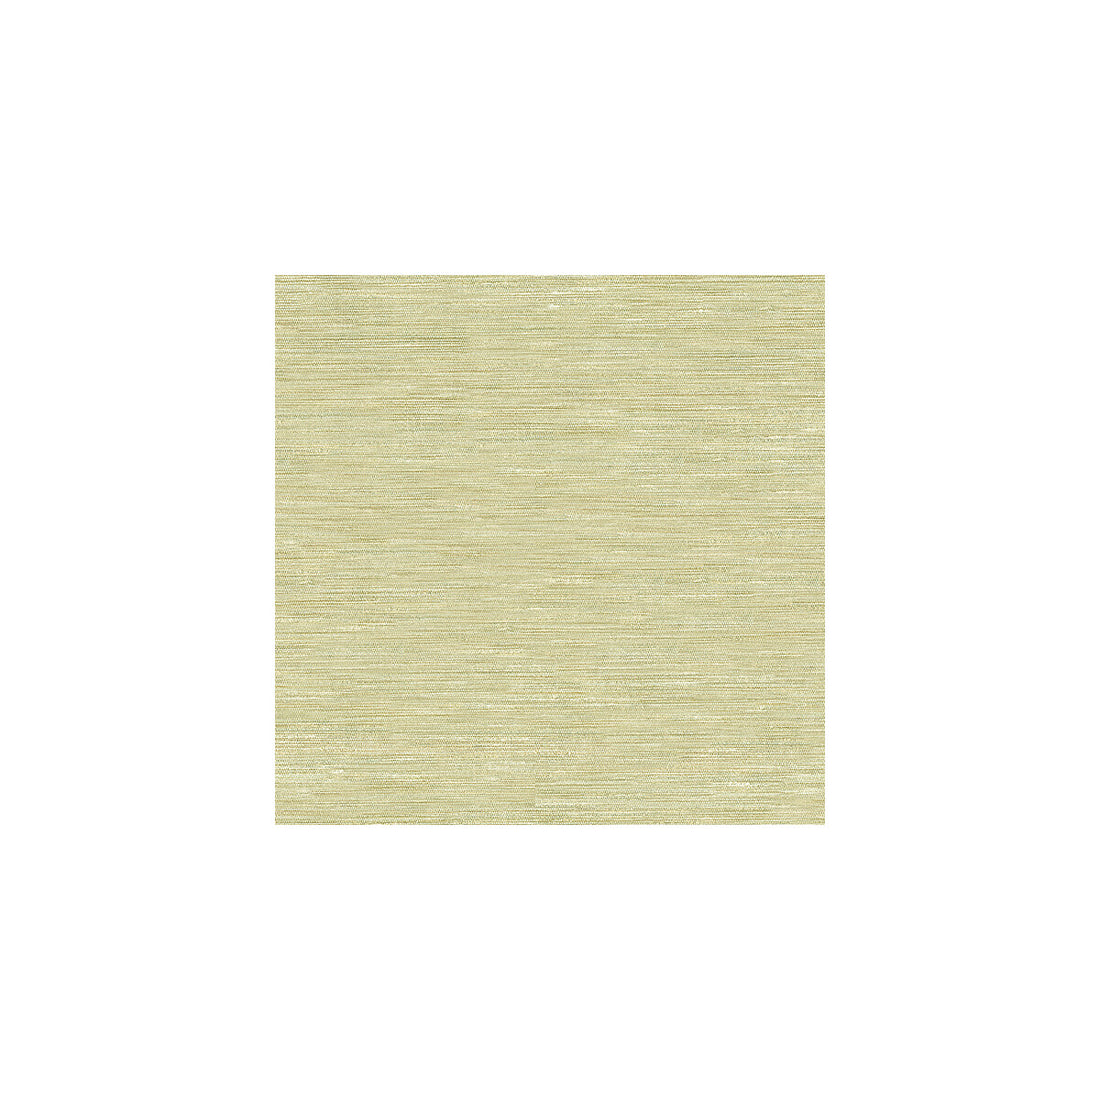 Kravet Basics fabric in 3779-1116 color - pattern 3779.1116.0 - by Kravet Basics